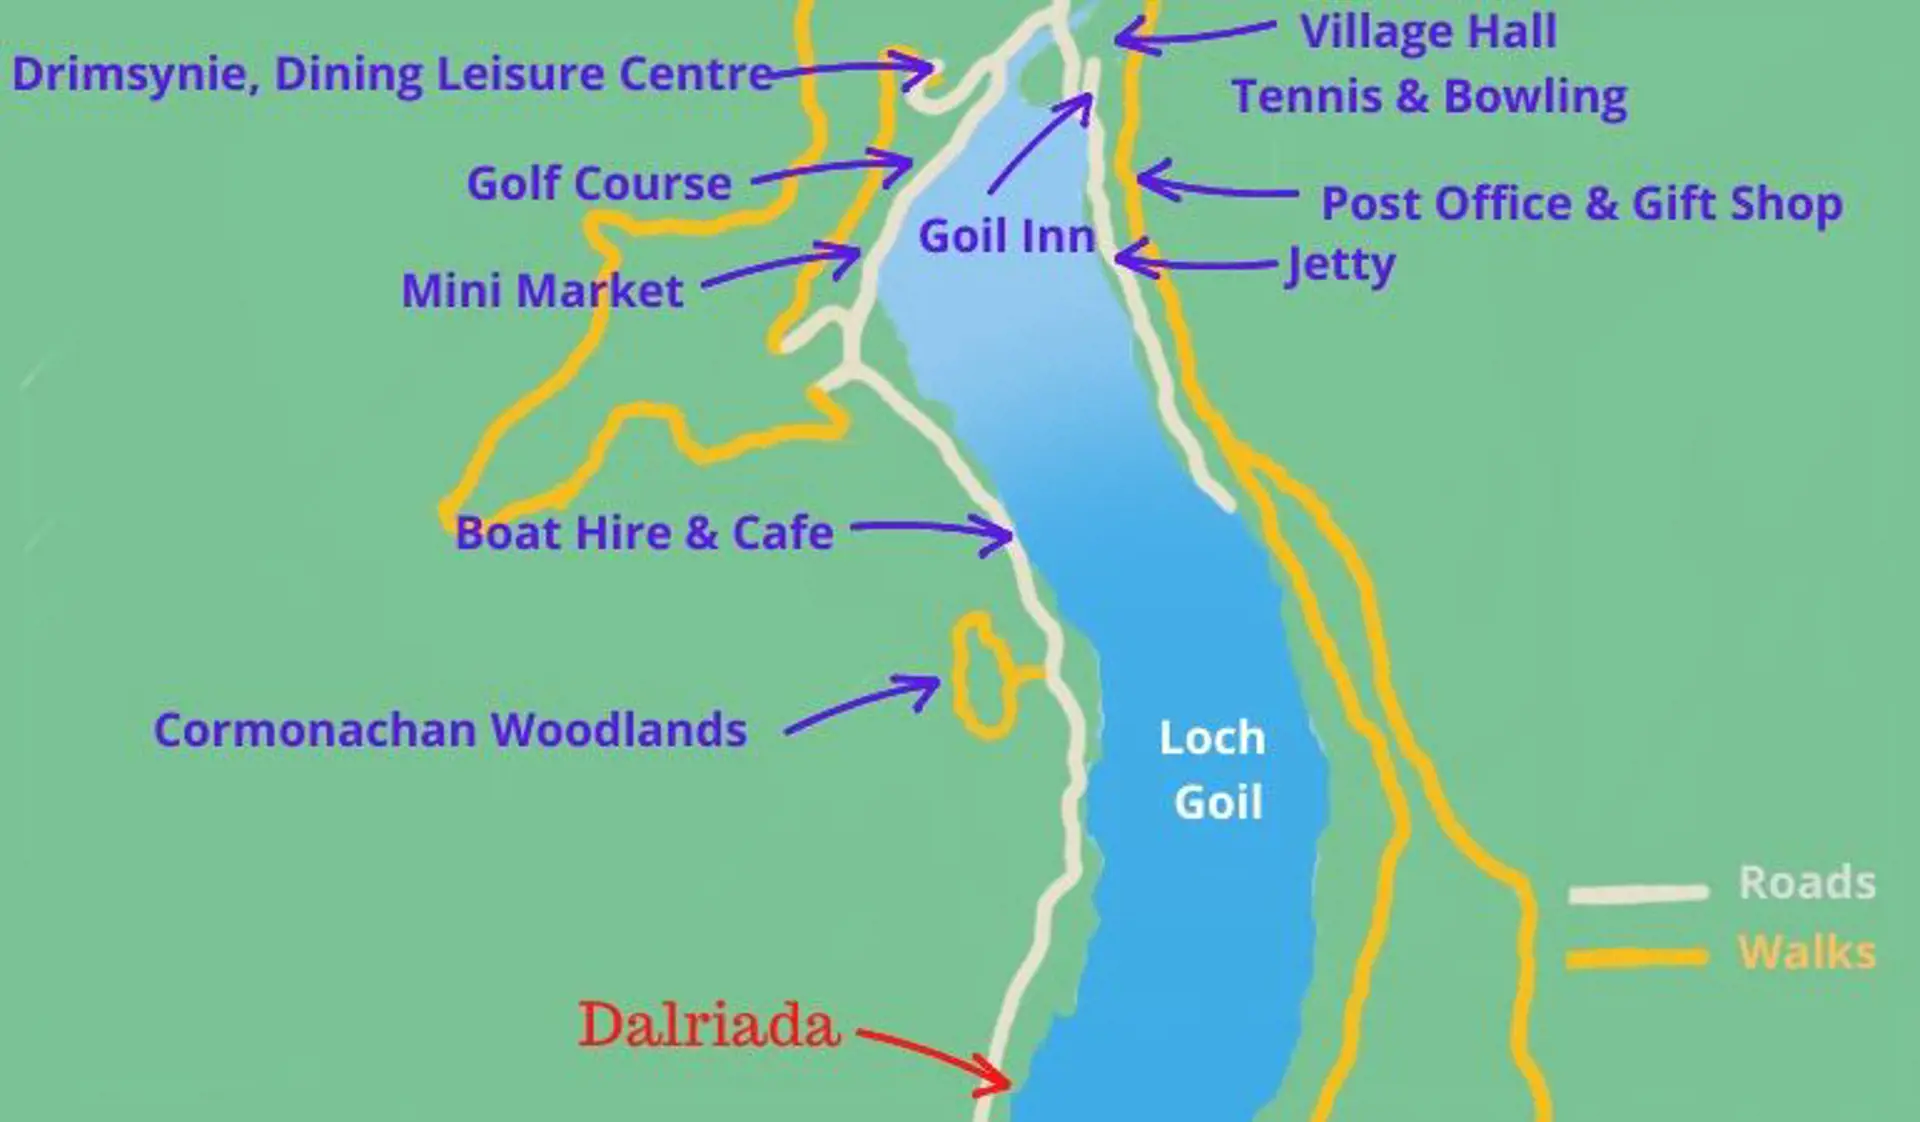 Dalriada by Loch Goil Image 1